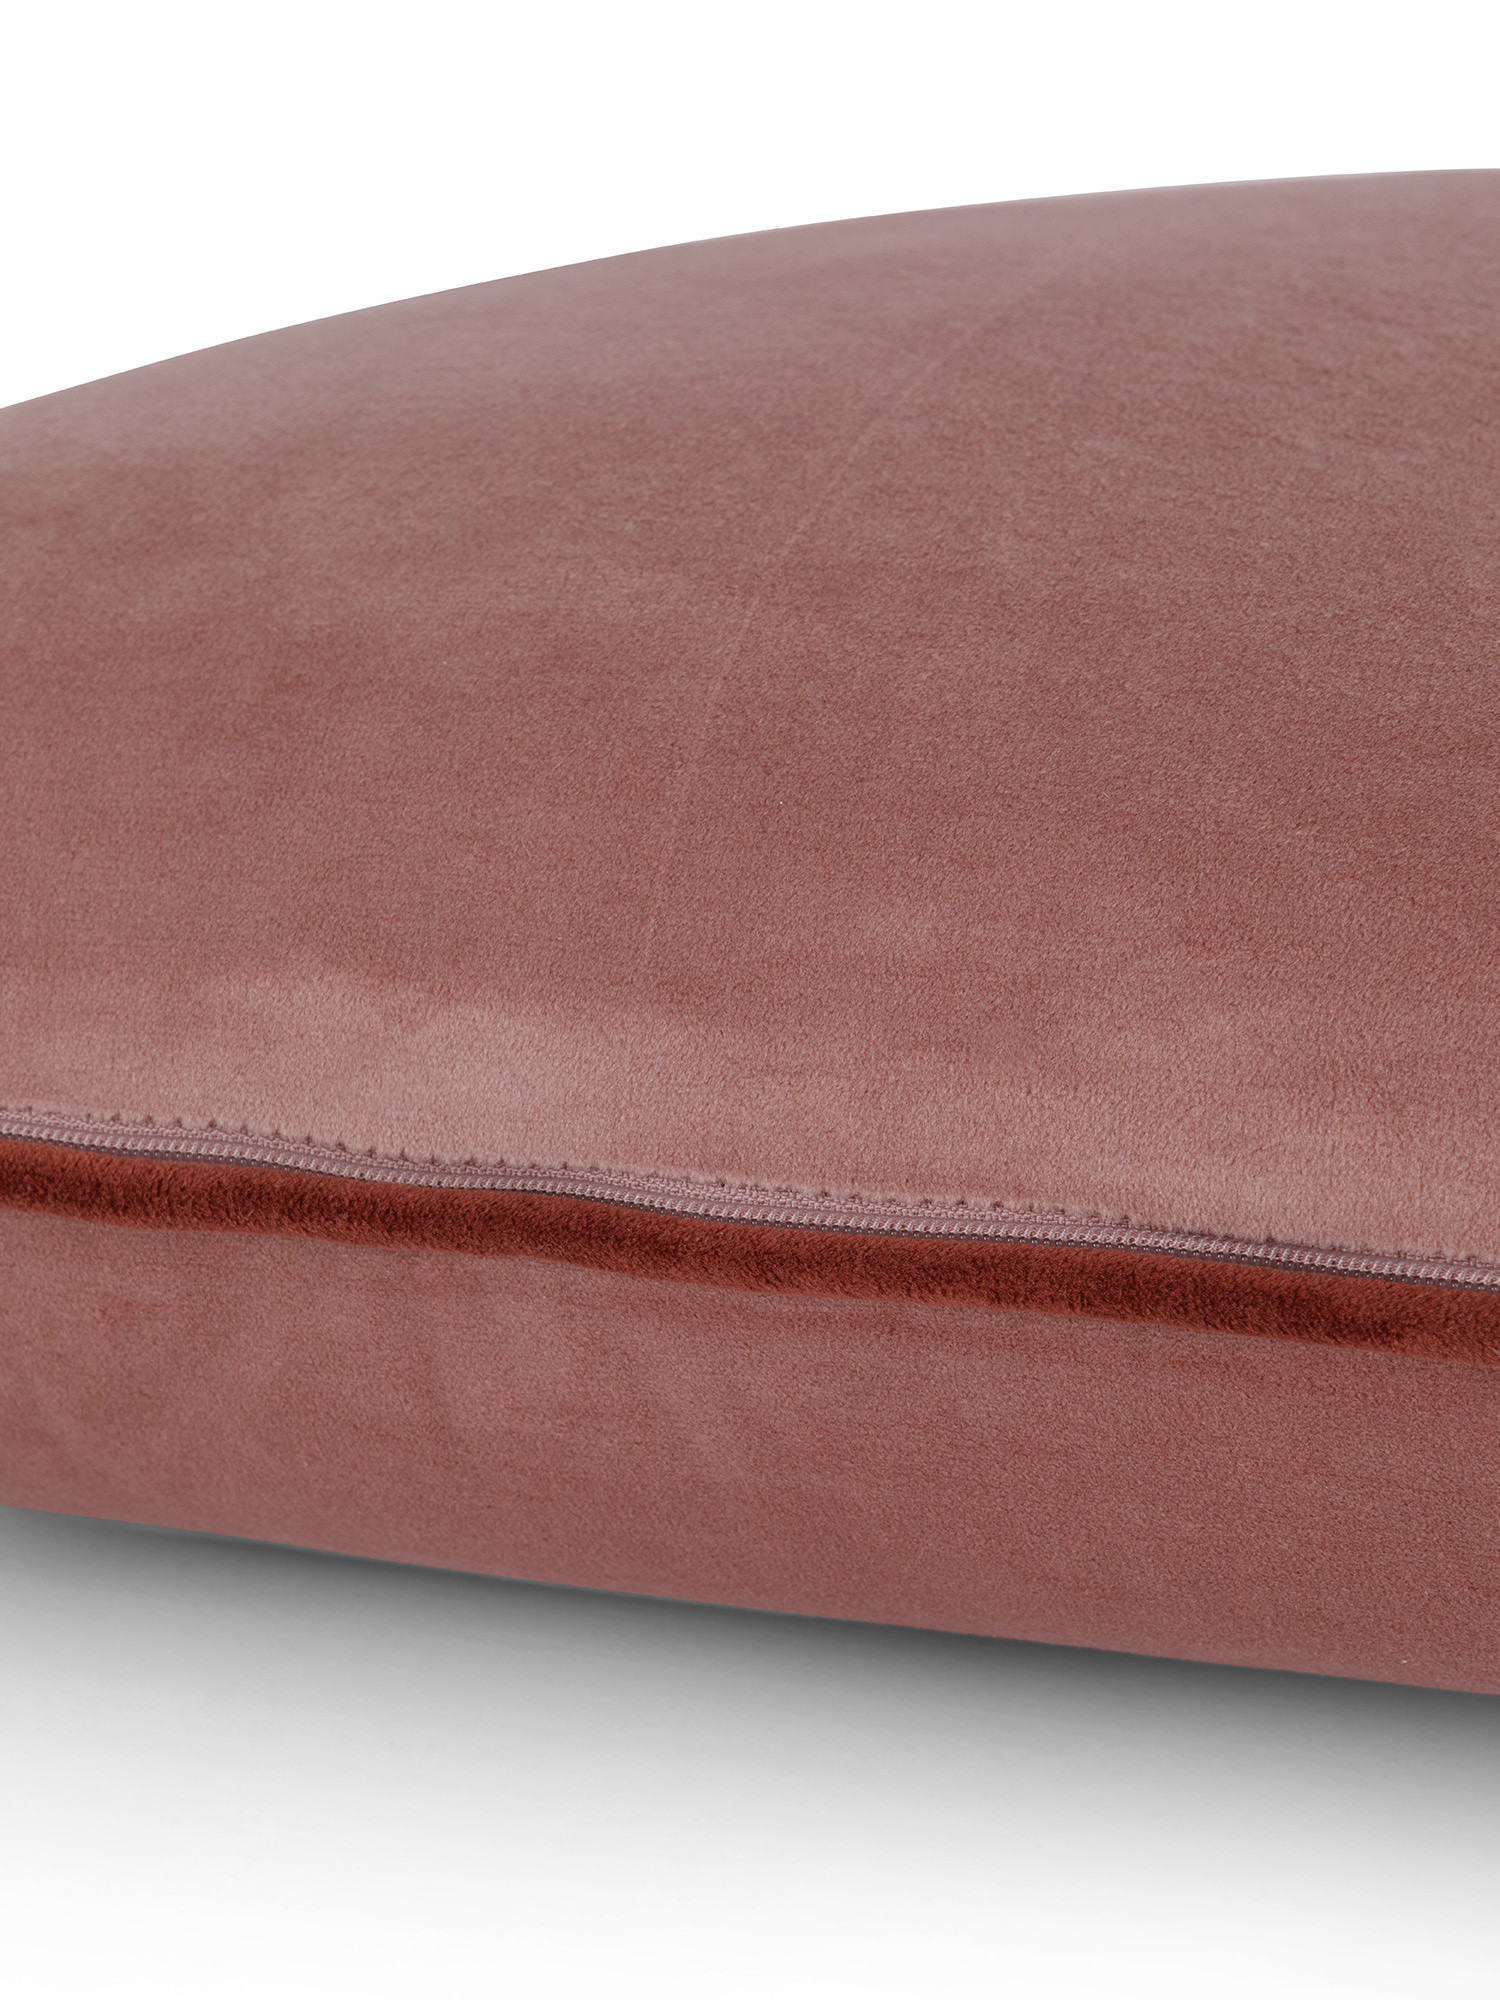 Cuscino in velluto con piping applicato sul bordo 45x45 cm, Rosa, large